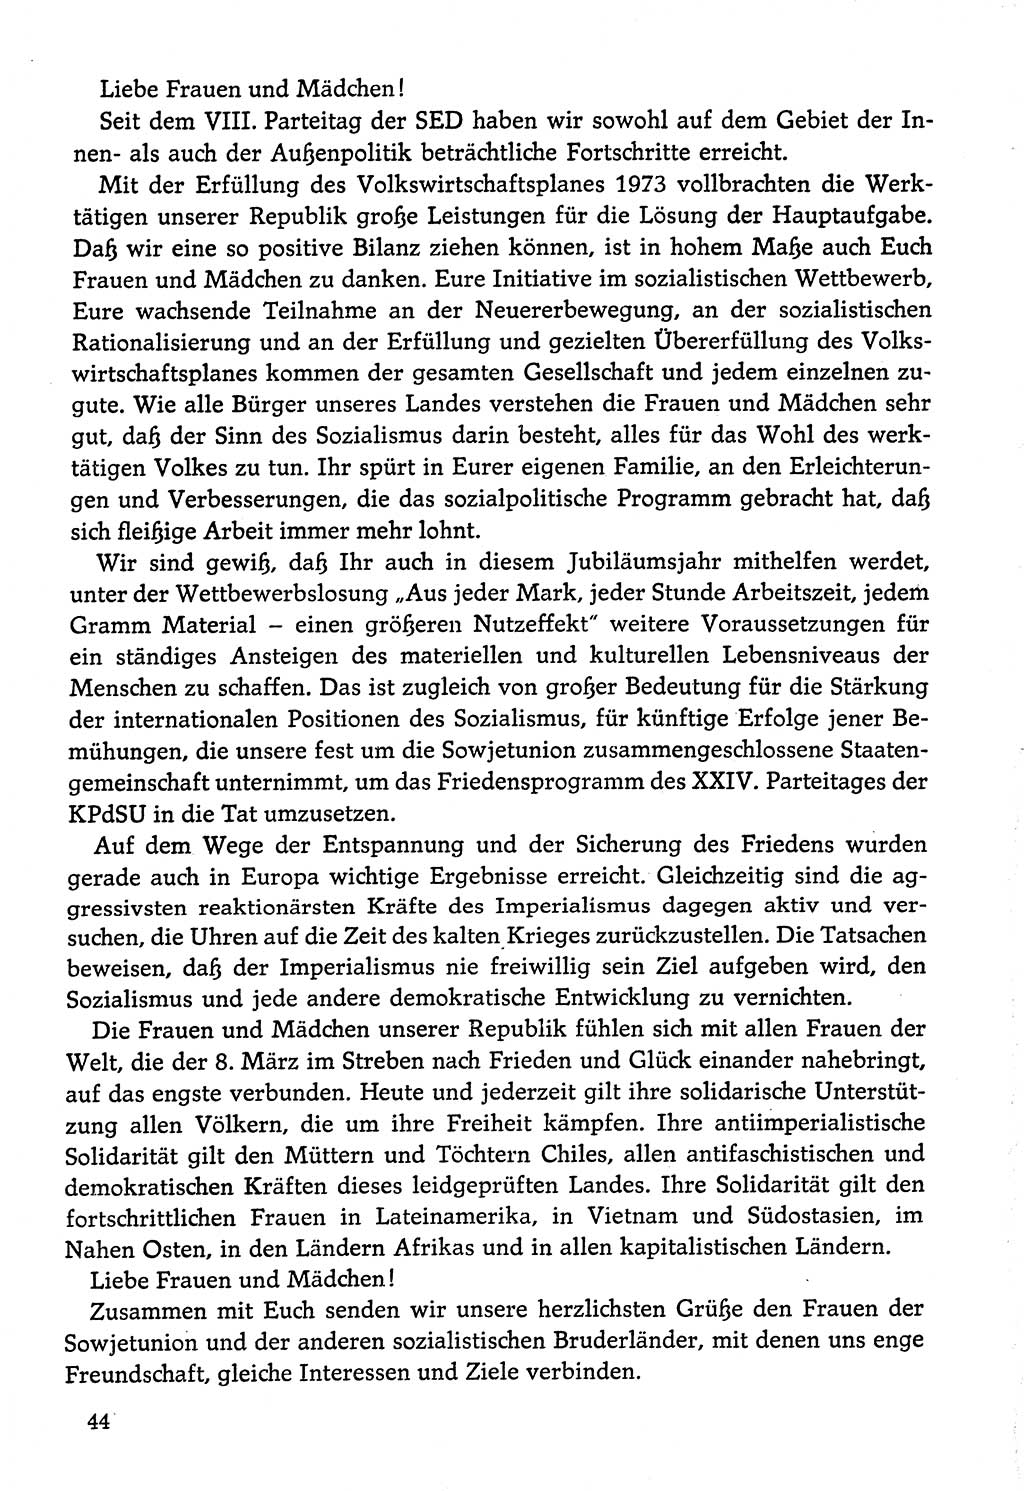 Dokumente der Sozialistischen Einheitspartei Deutschlands (SED) [Deutsche Demokratische Republik (DDR)] 1974-1975, Seite 44 (Dok. SED DDR 1978, Bd. ⅩⅤ, S. 44)